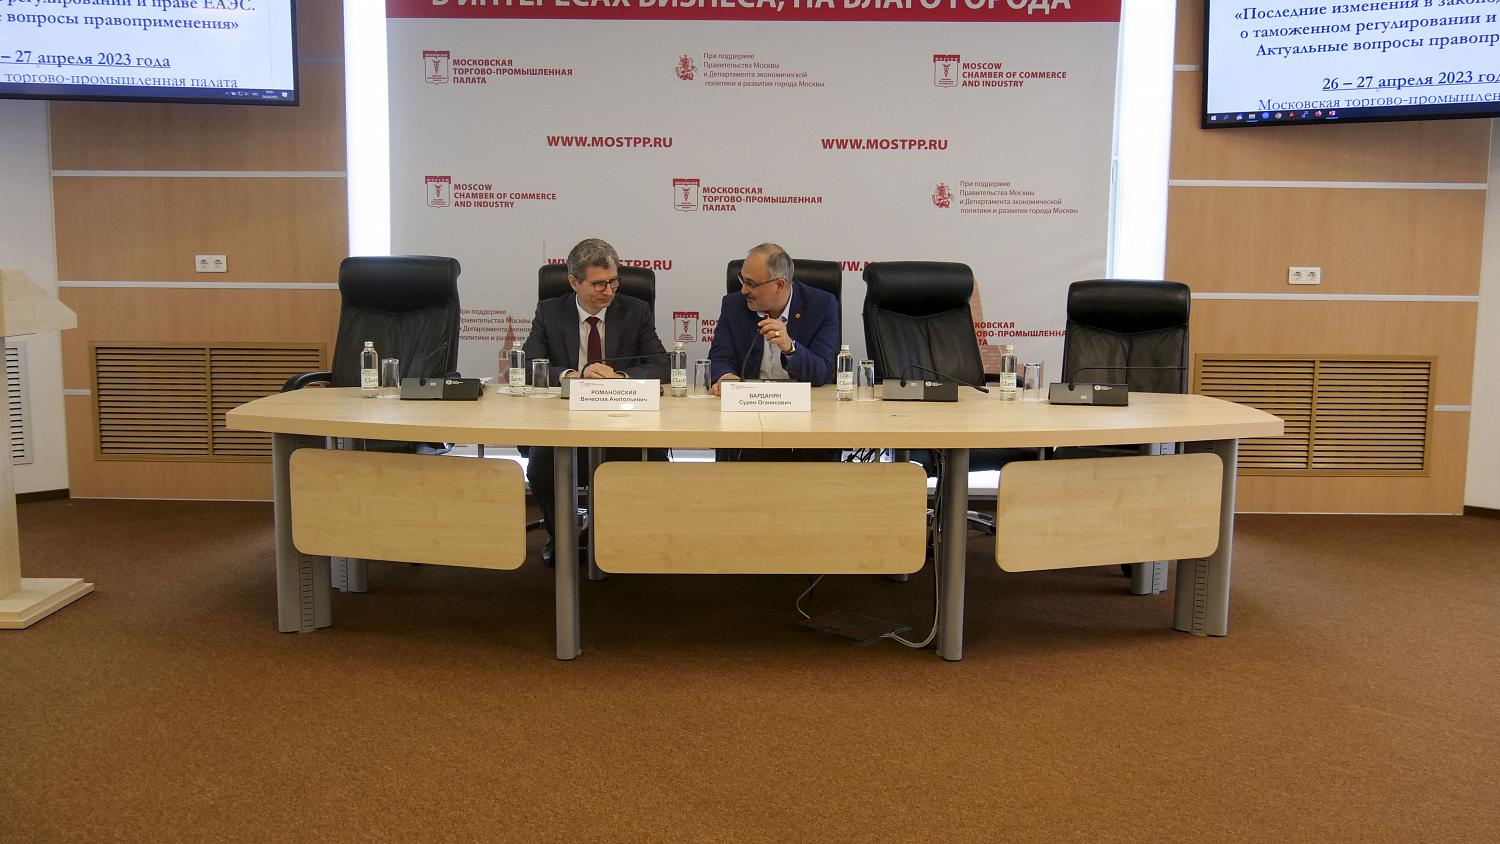 Представители ФТС России рассказали участникам ВЭД об актуальных изменениях в таможенном законодательстве